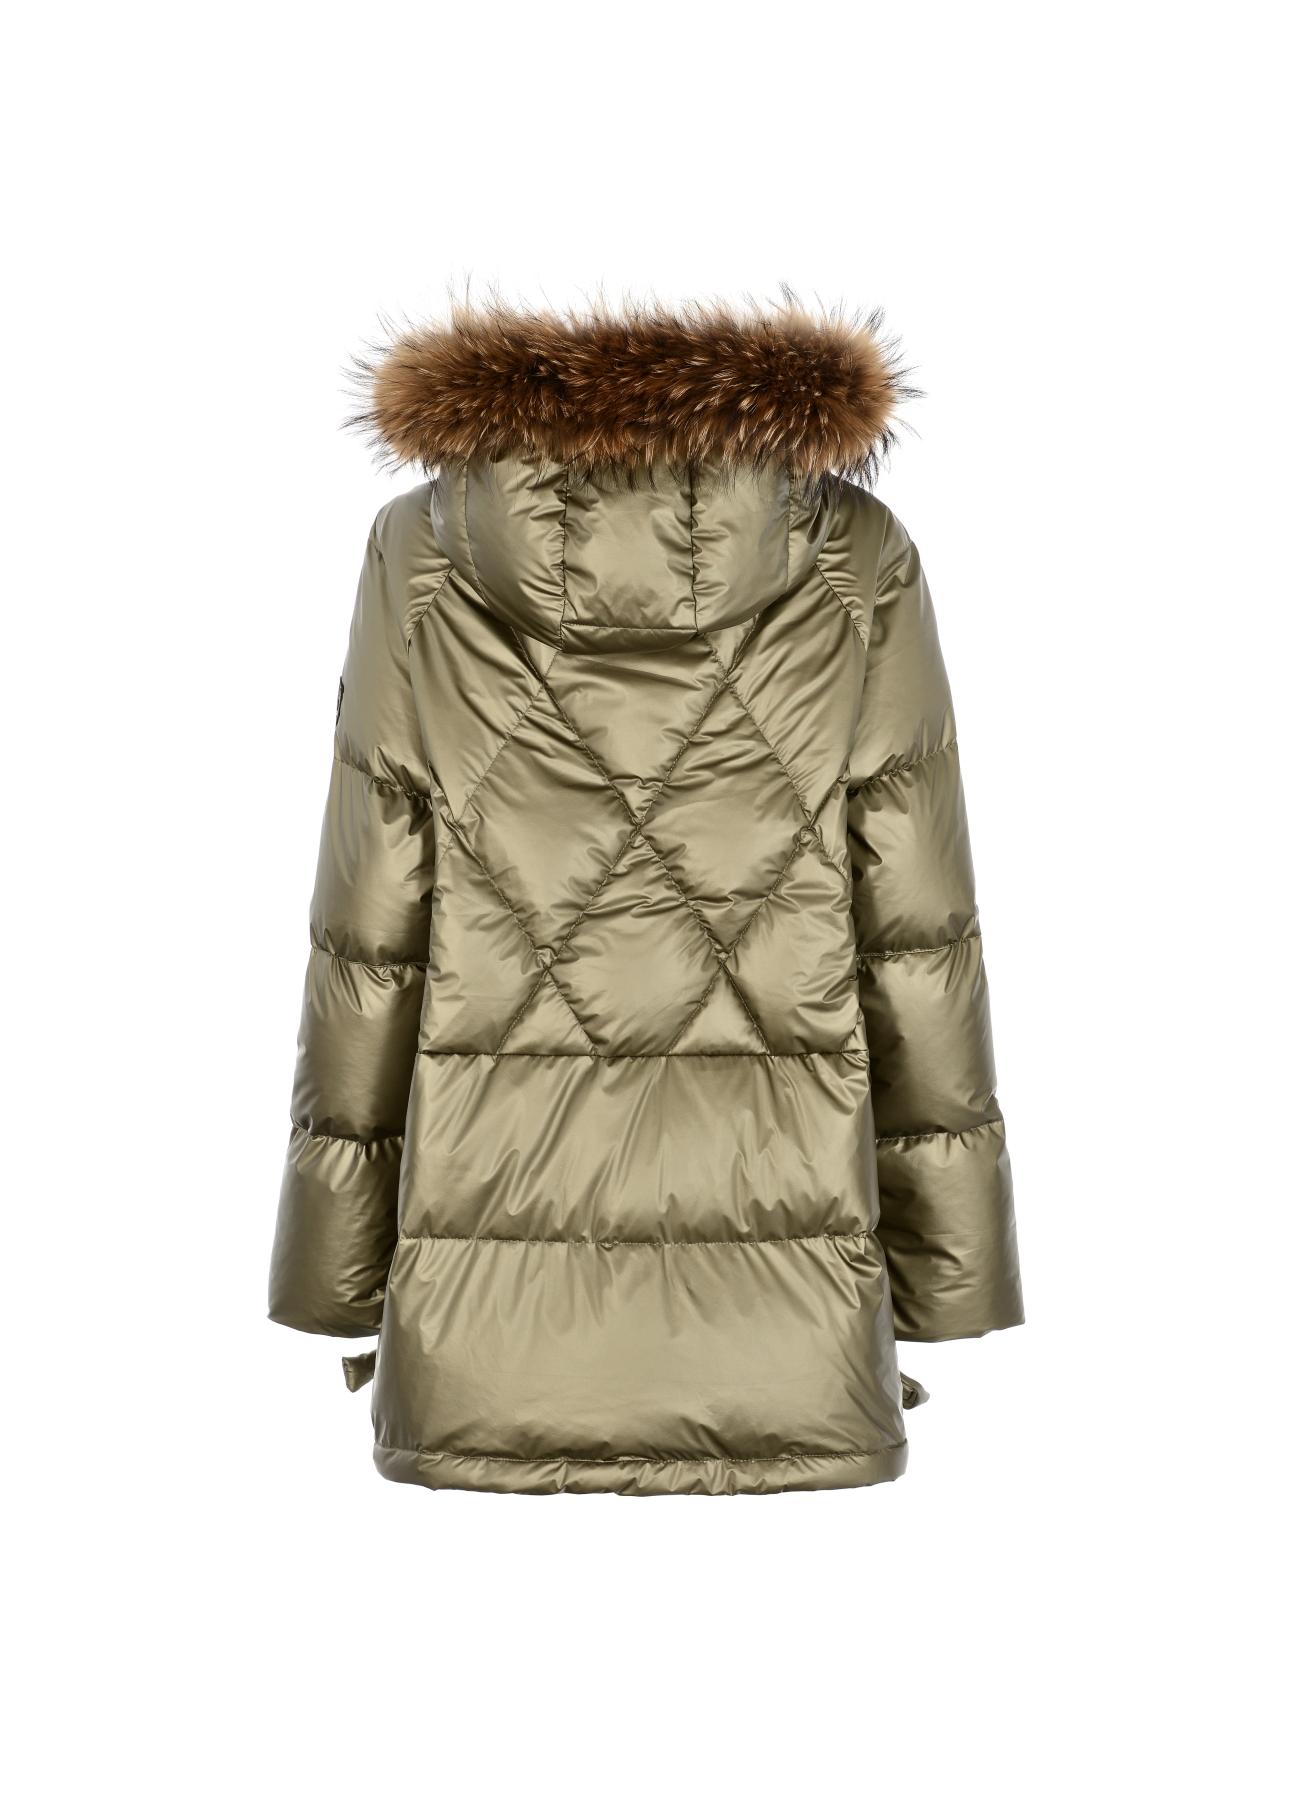 Krótka kurtka zimowa damska z kapturem KURDT-0339-57(Z22)